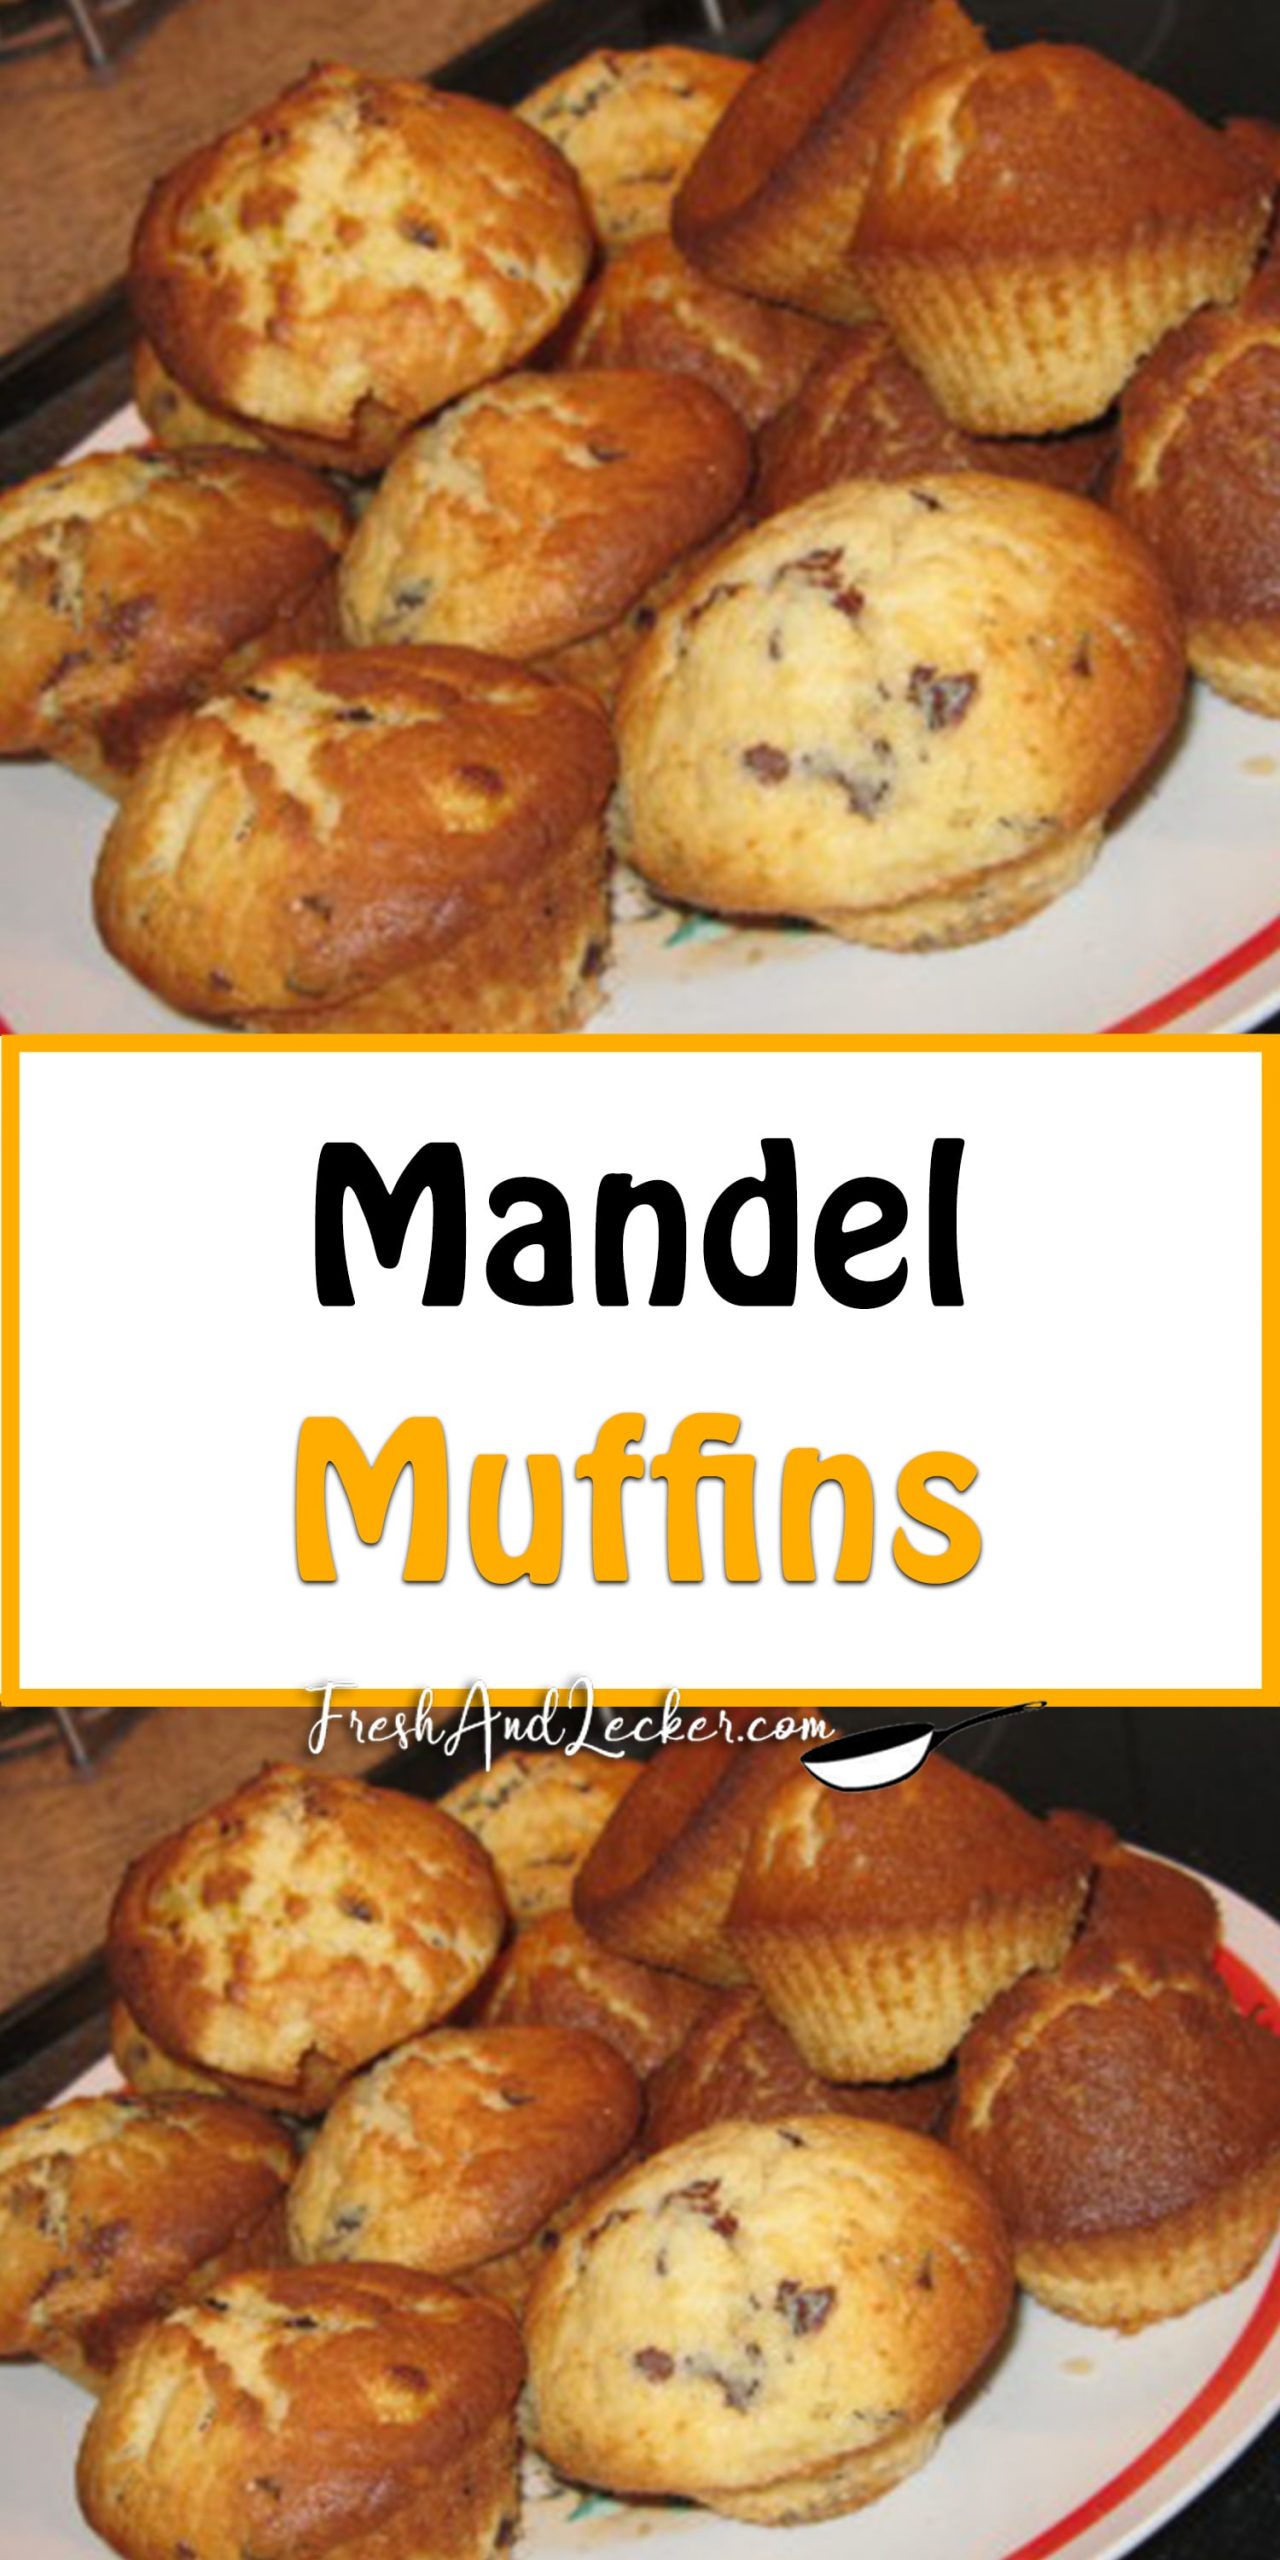 Mandel-Muffins - Fresh Lecker